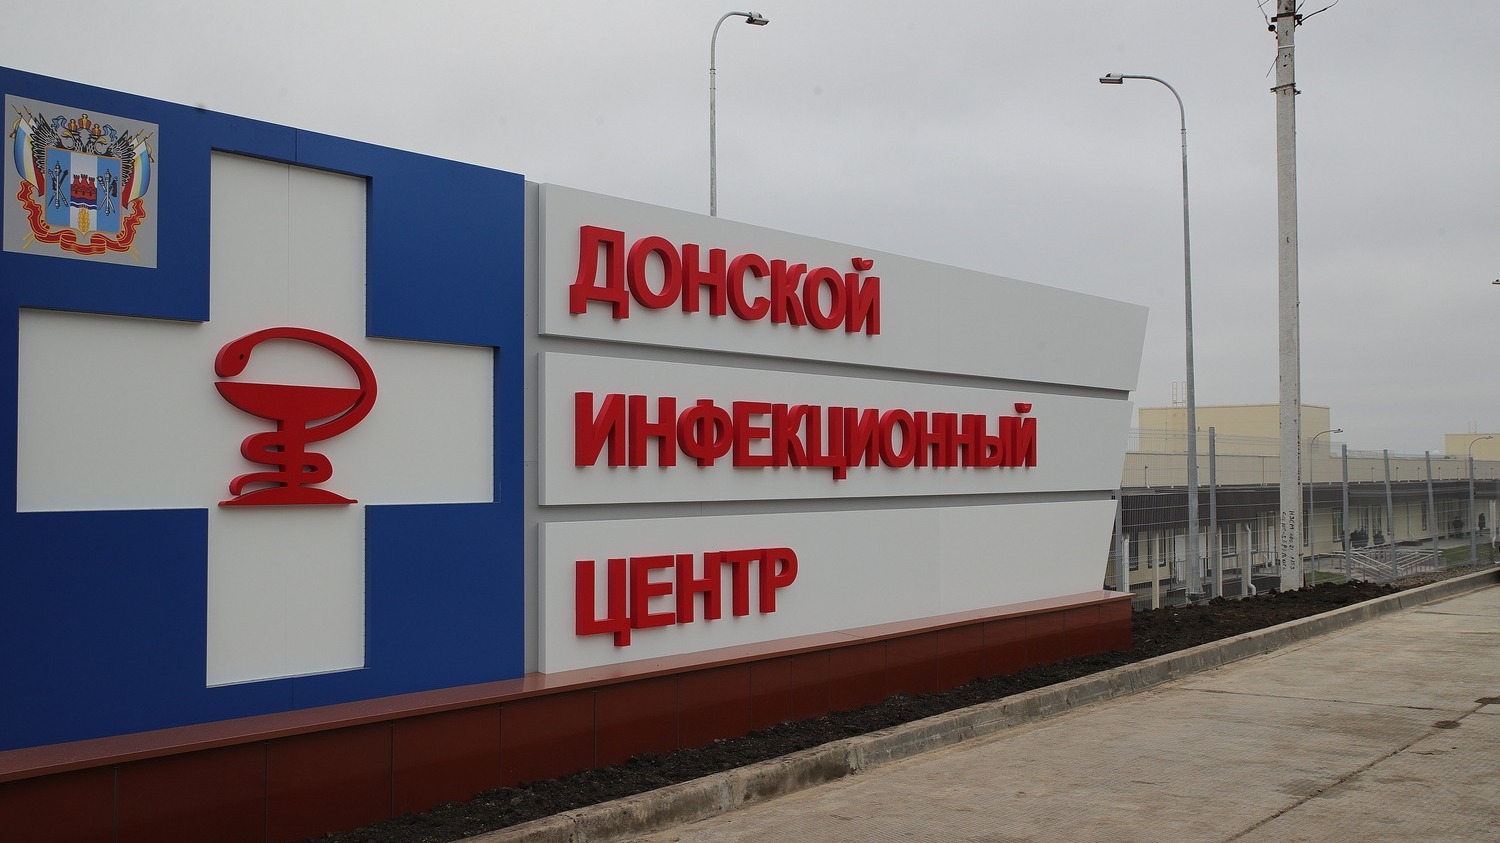 Глава Ростовской области Голубев обещал новые дороги к Донскому инфекционному центру